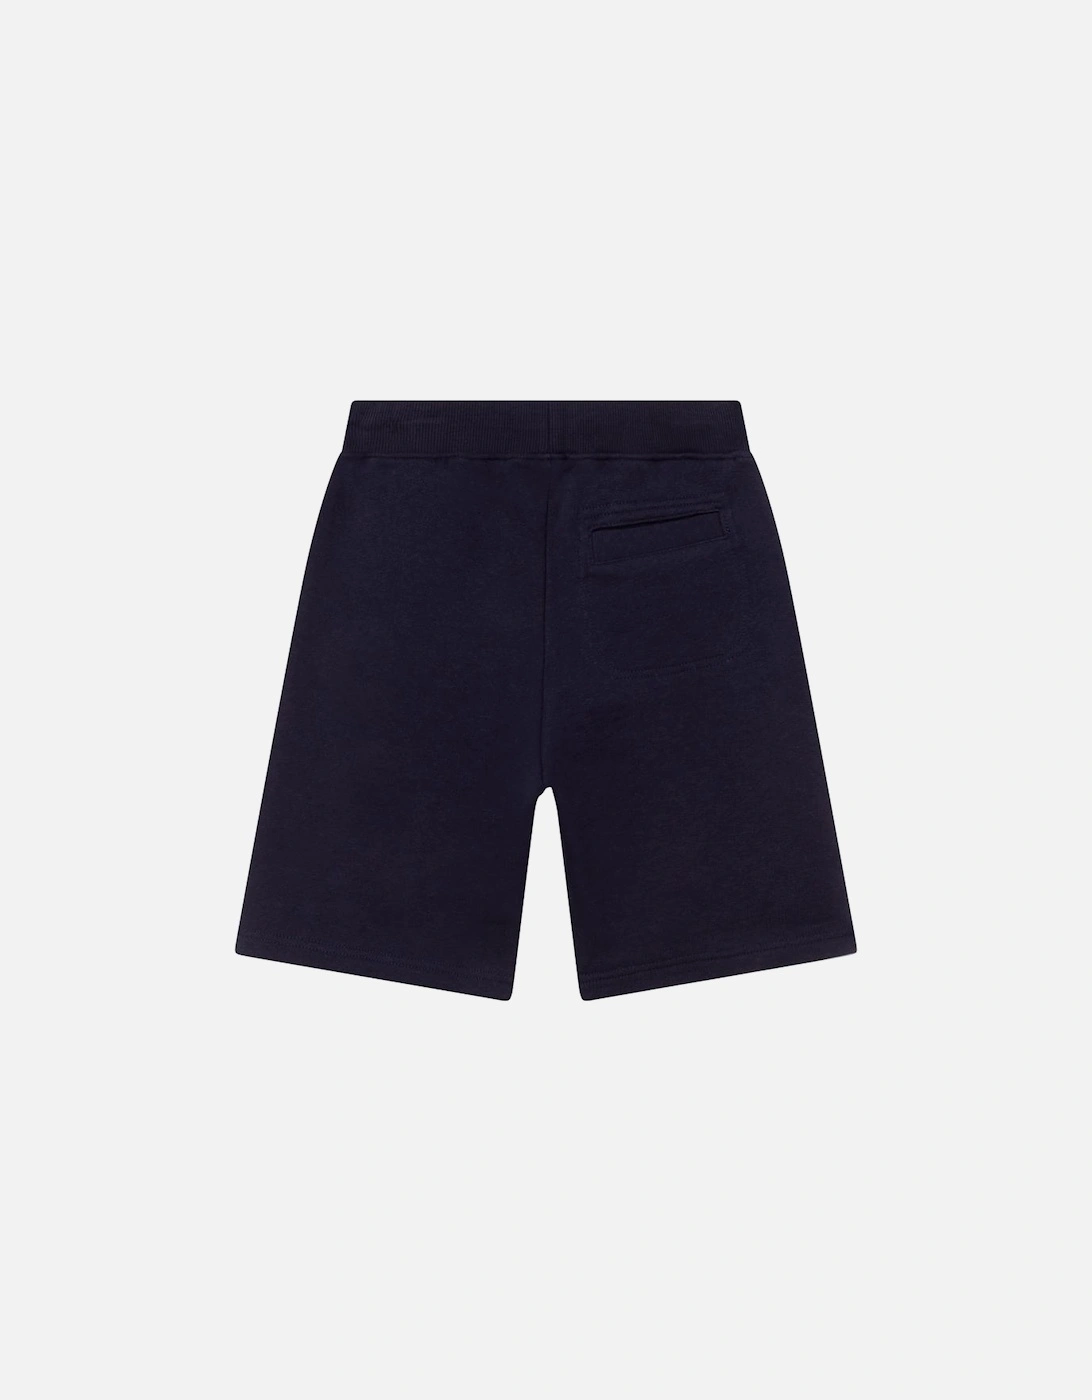 Boys Navy / Red Shorts